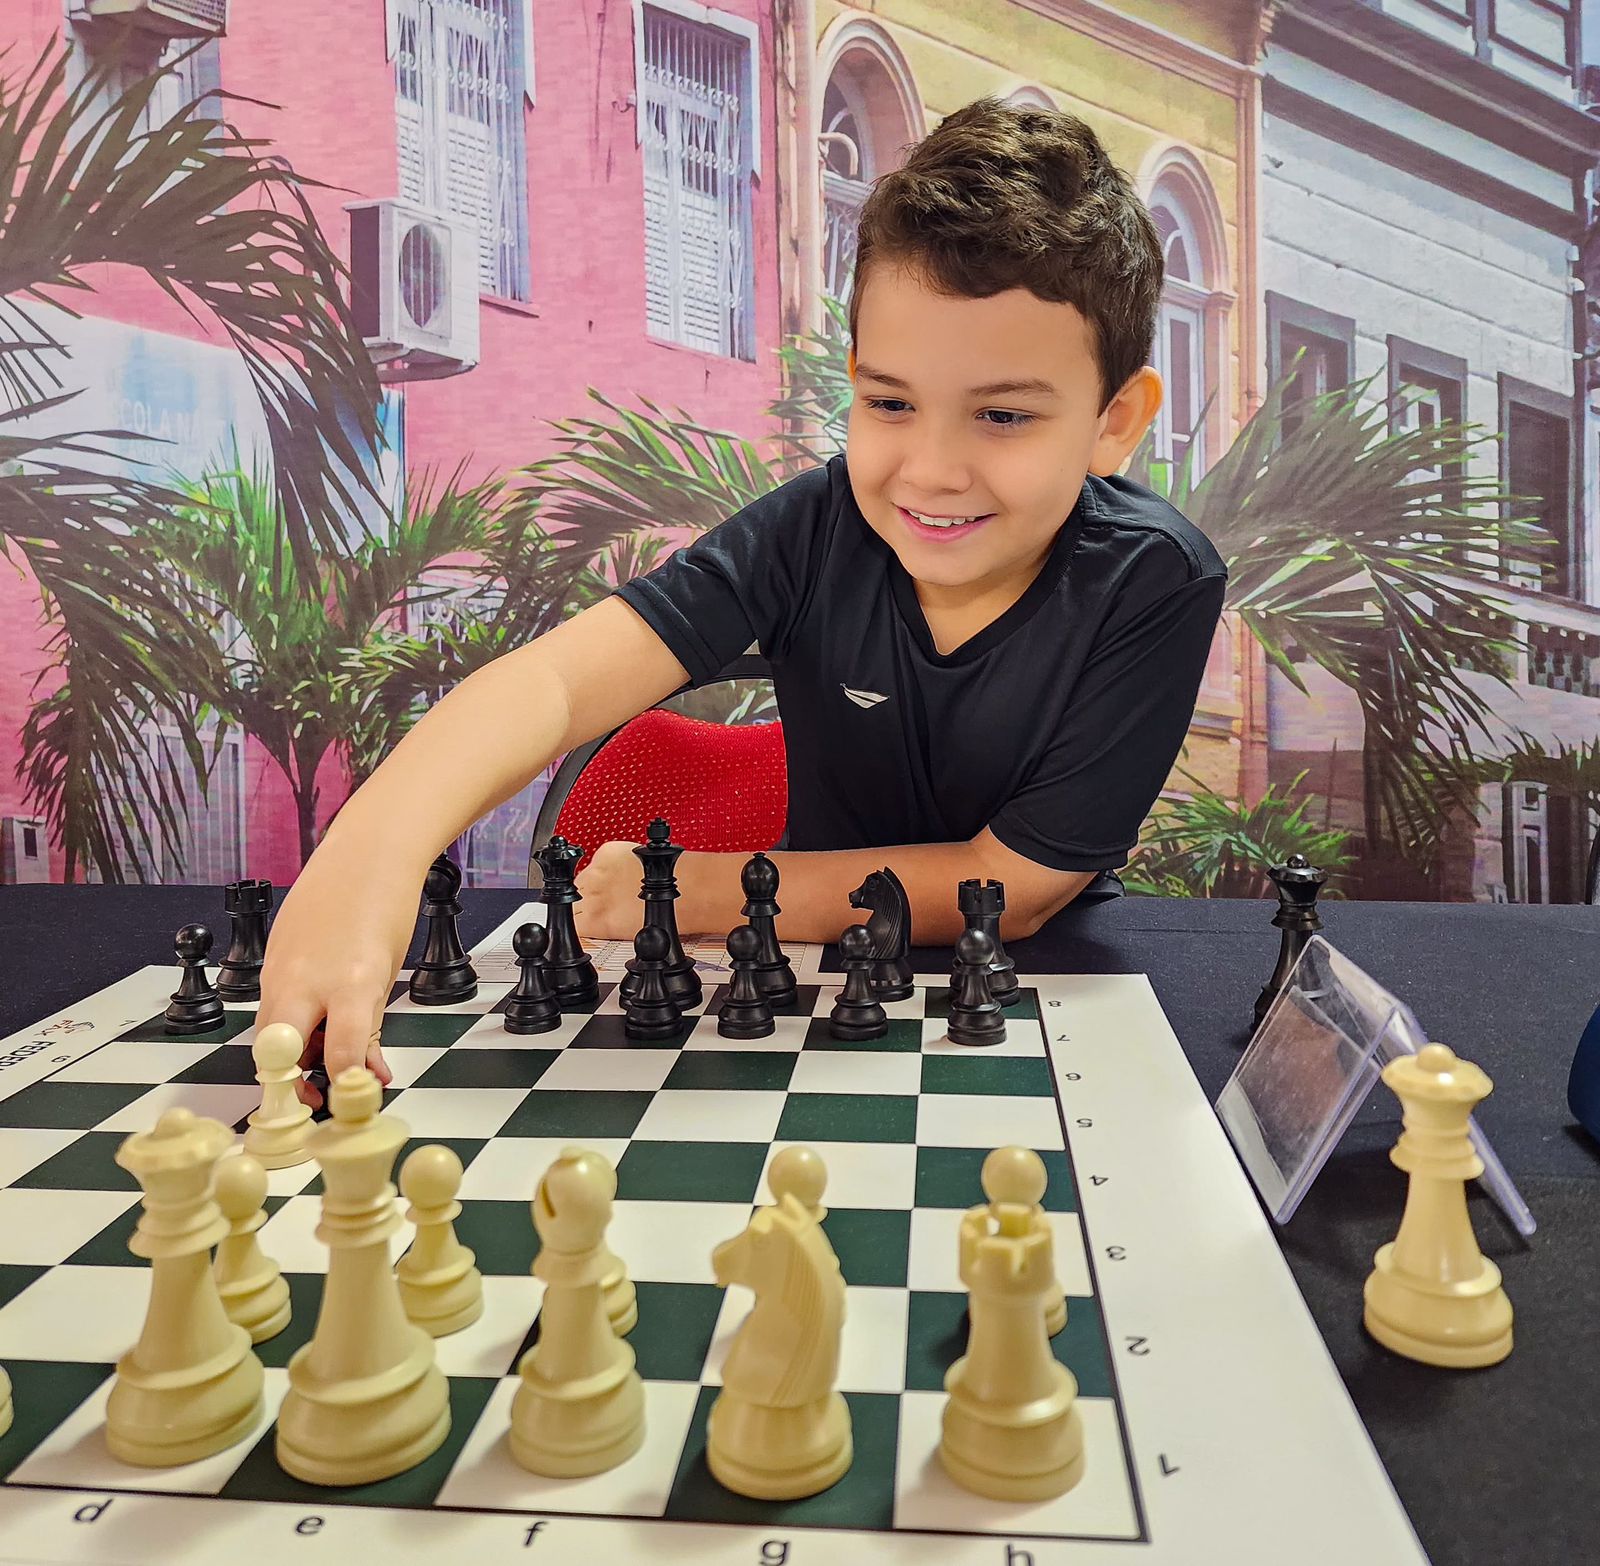 Maior jogador da América Latina participa de Campeonato de xadrez em Manaus  – Blog do Hiel Levy